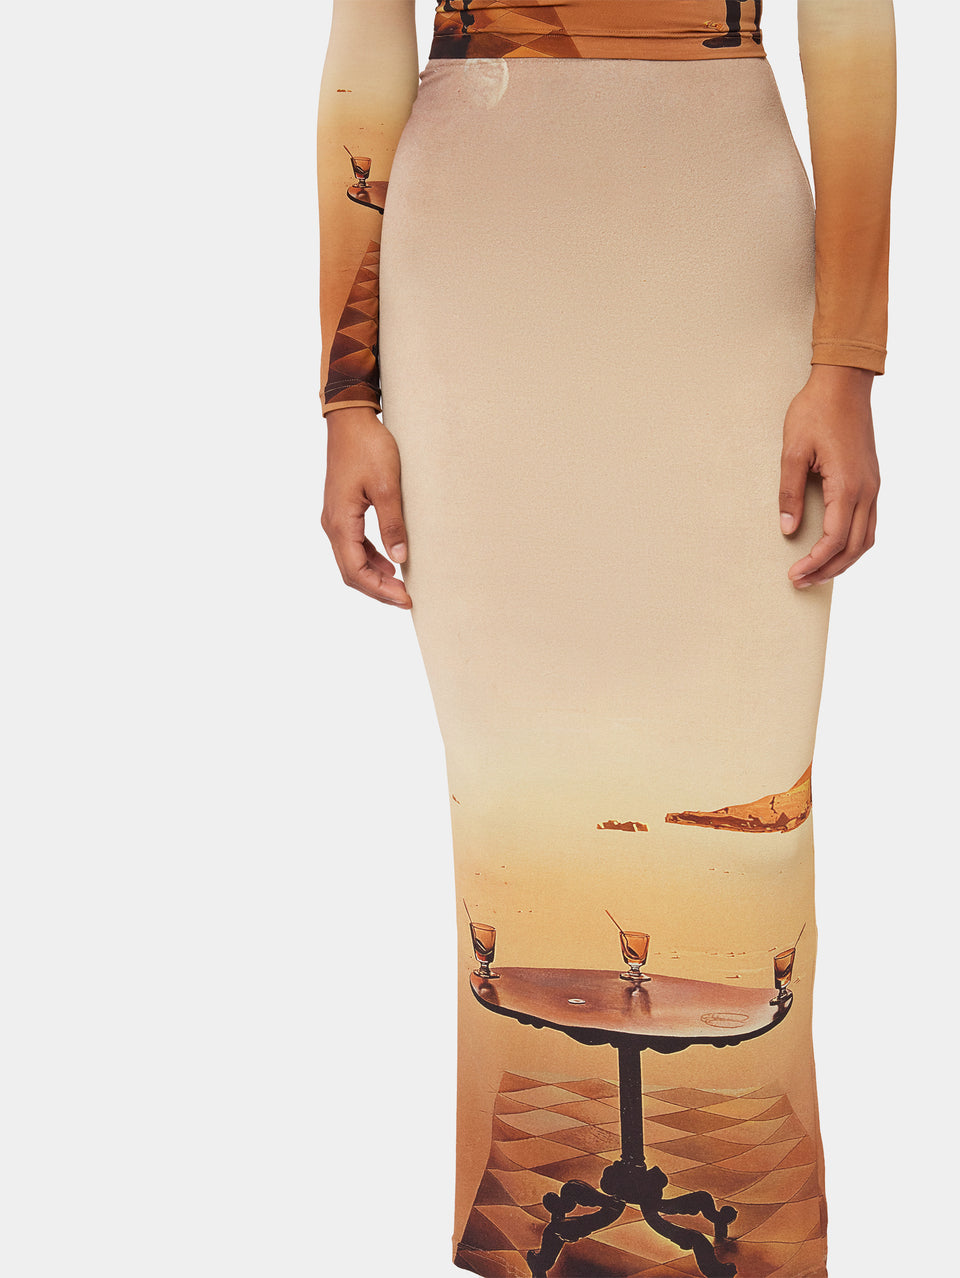 Dali's Sun-table Long skirt